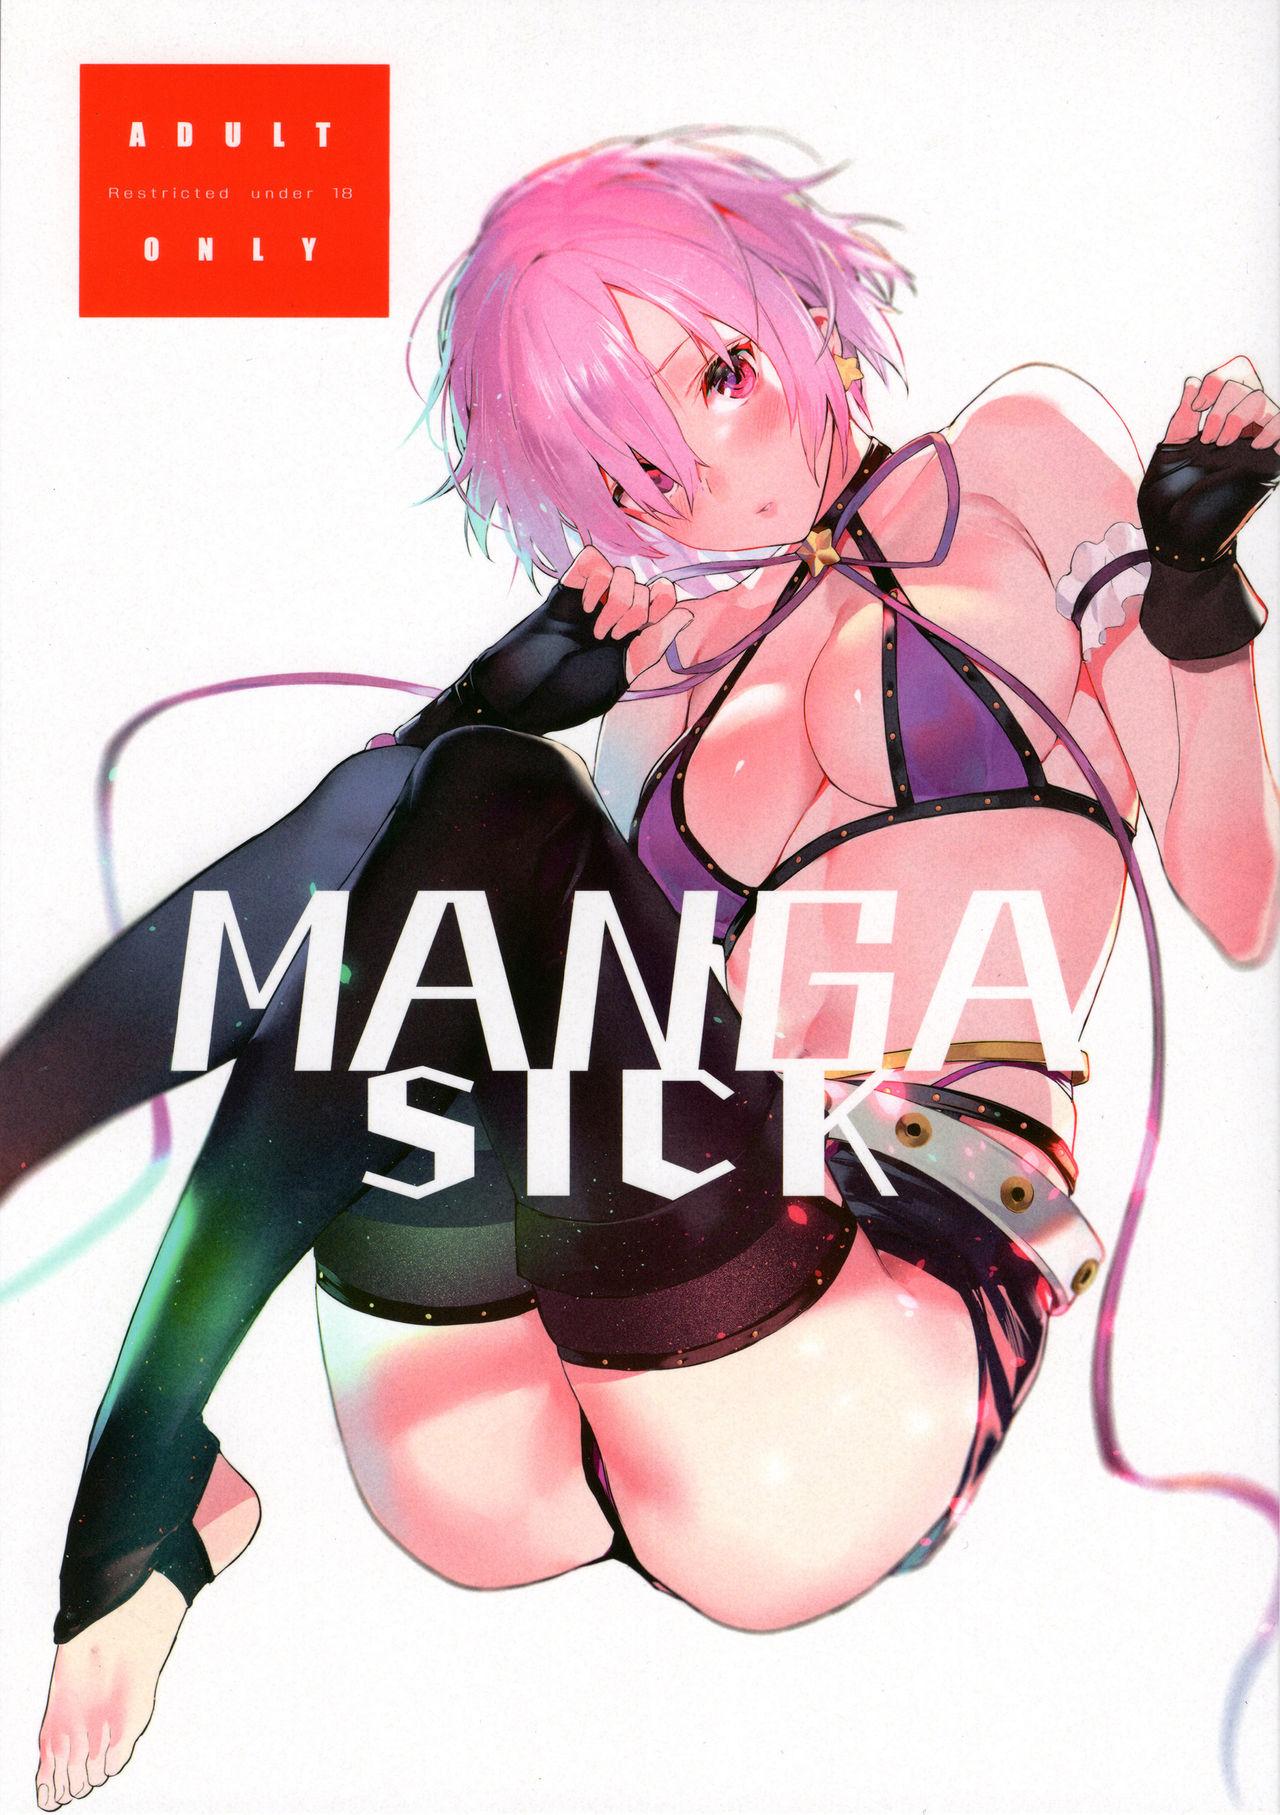 Sem Camisinha Manga Sick - Fate grand order Pickup - Picture 1